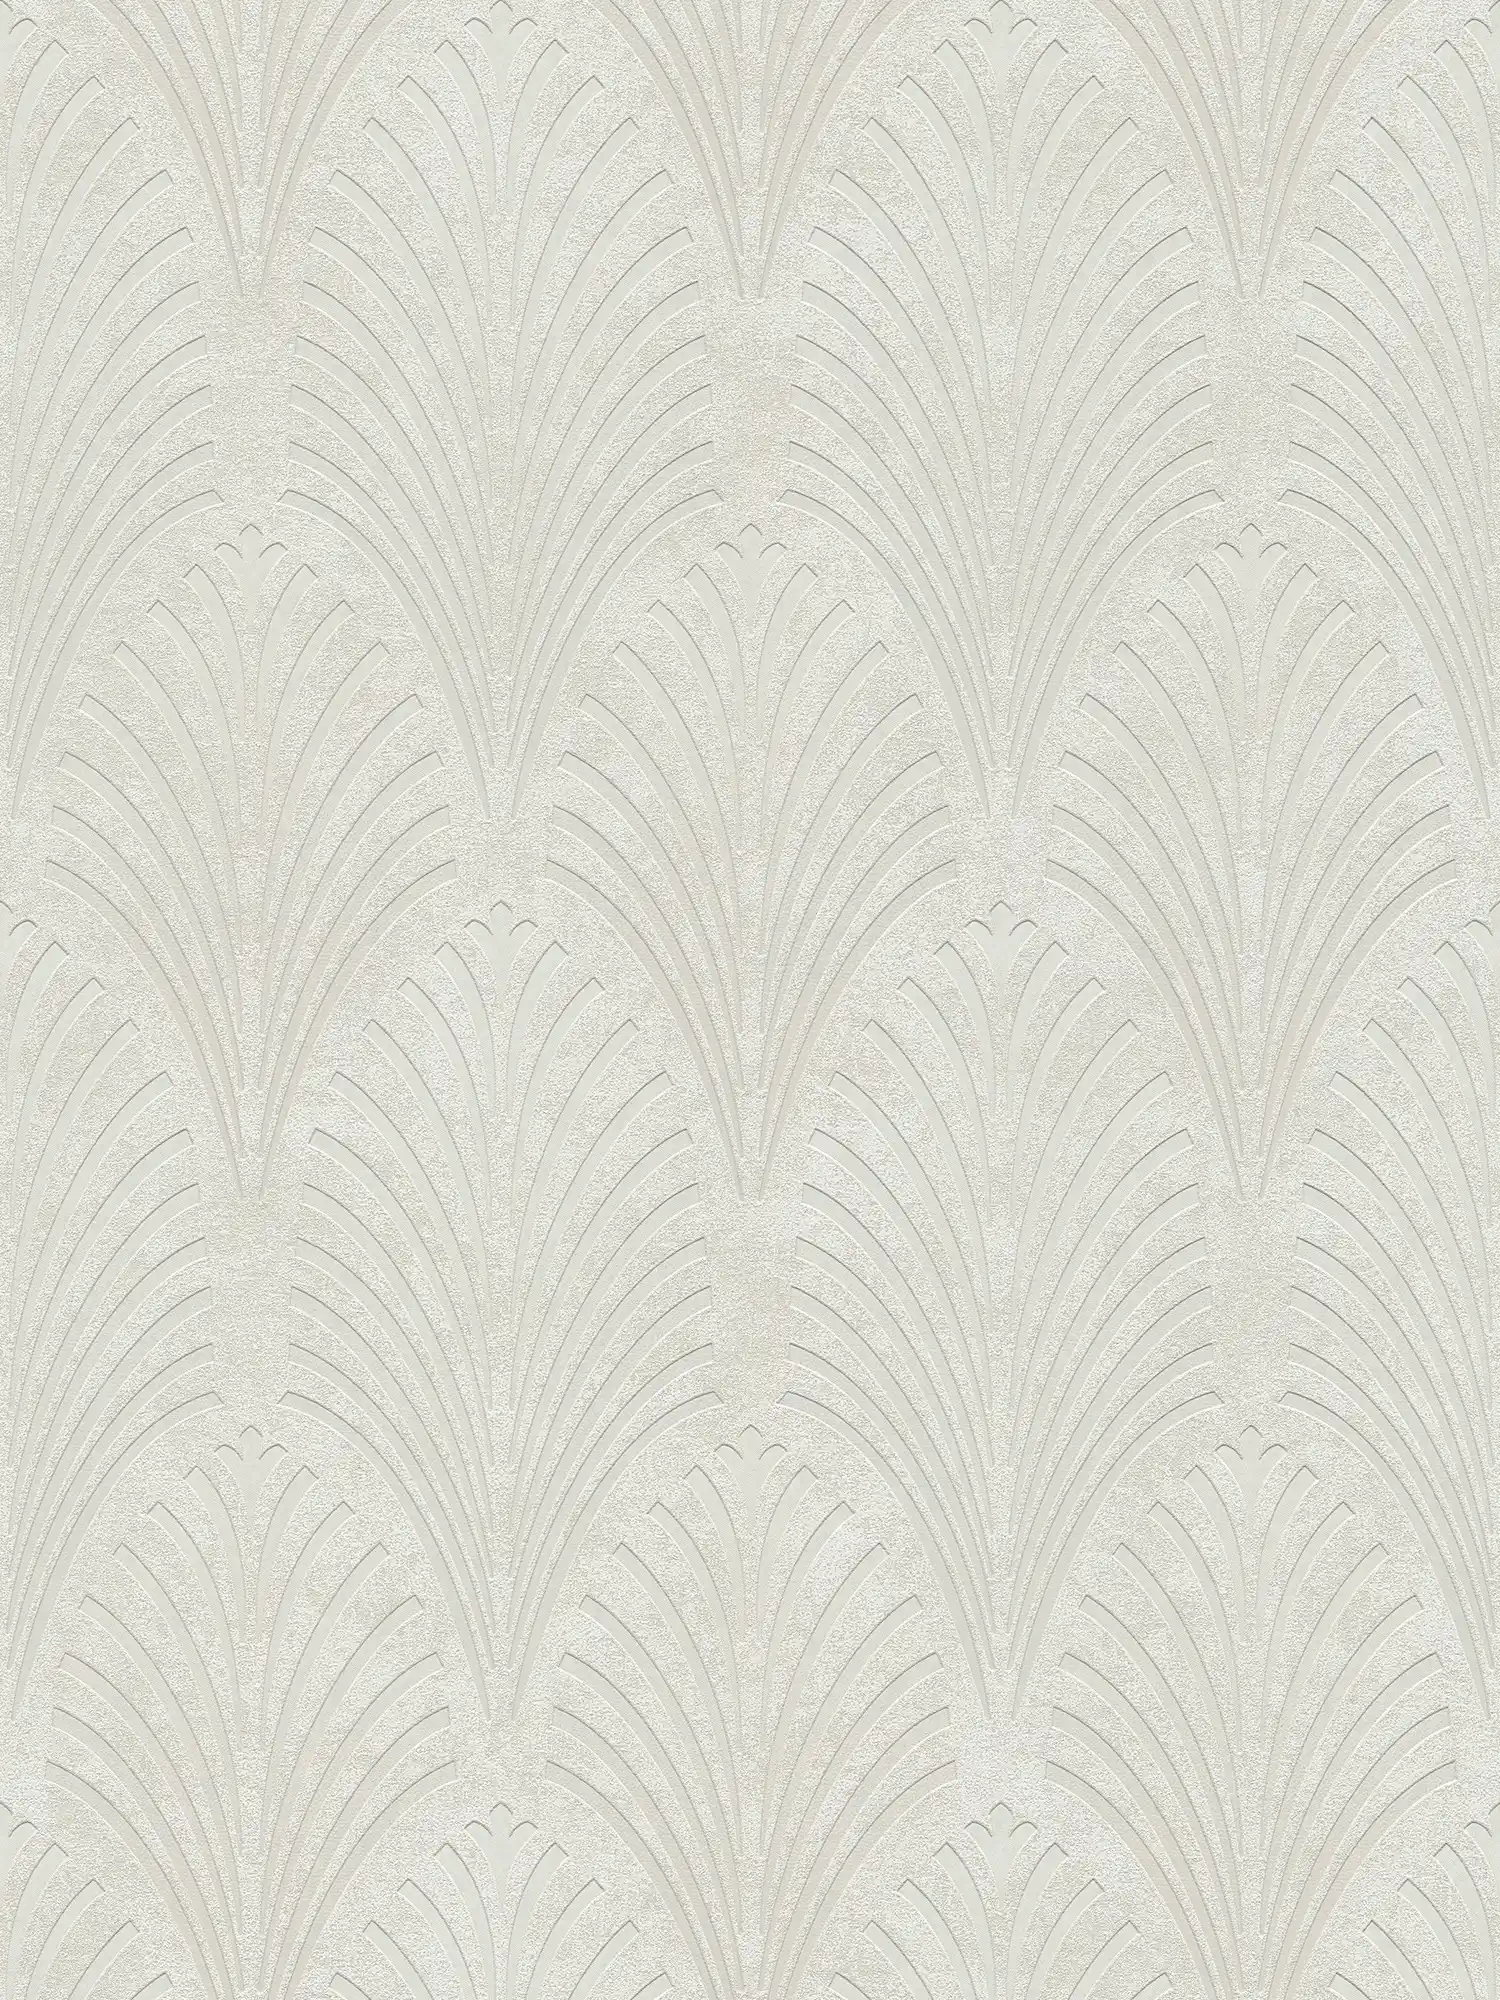 Retro behang Art Deco stijl met geometrisch patroon - crème, grijs, beige
